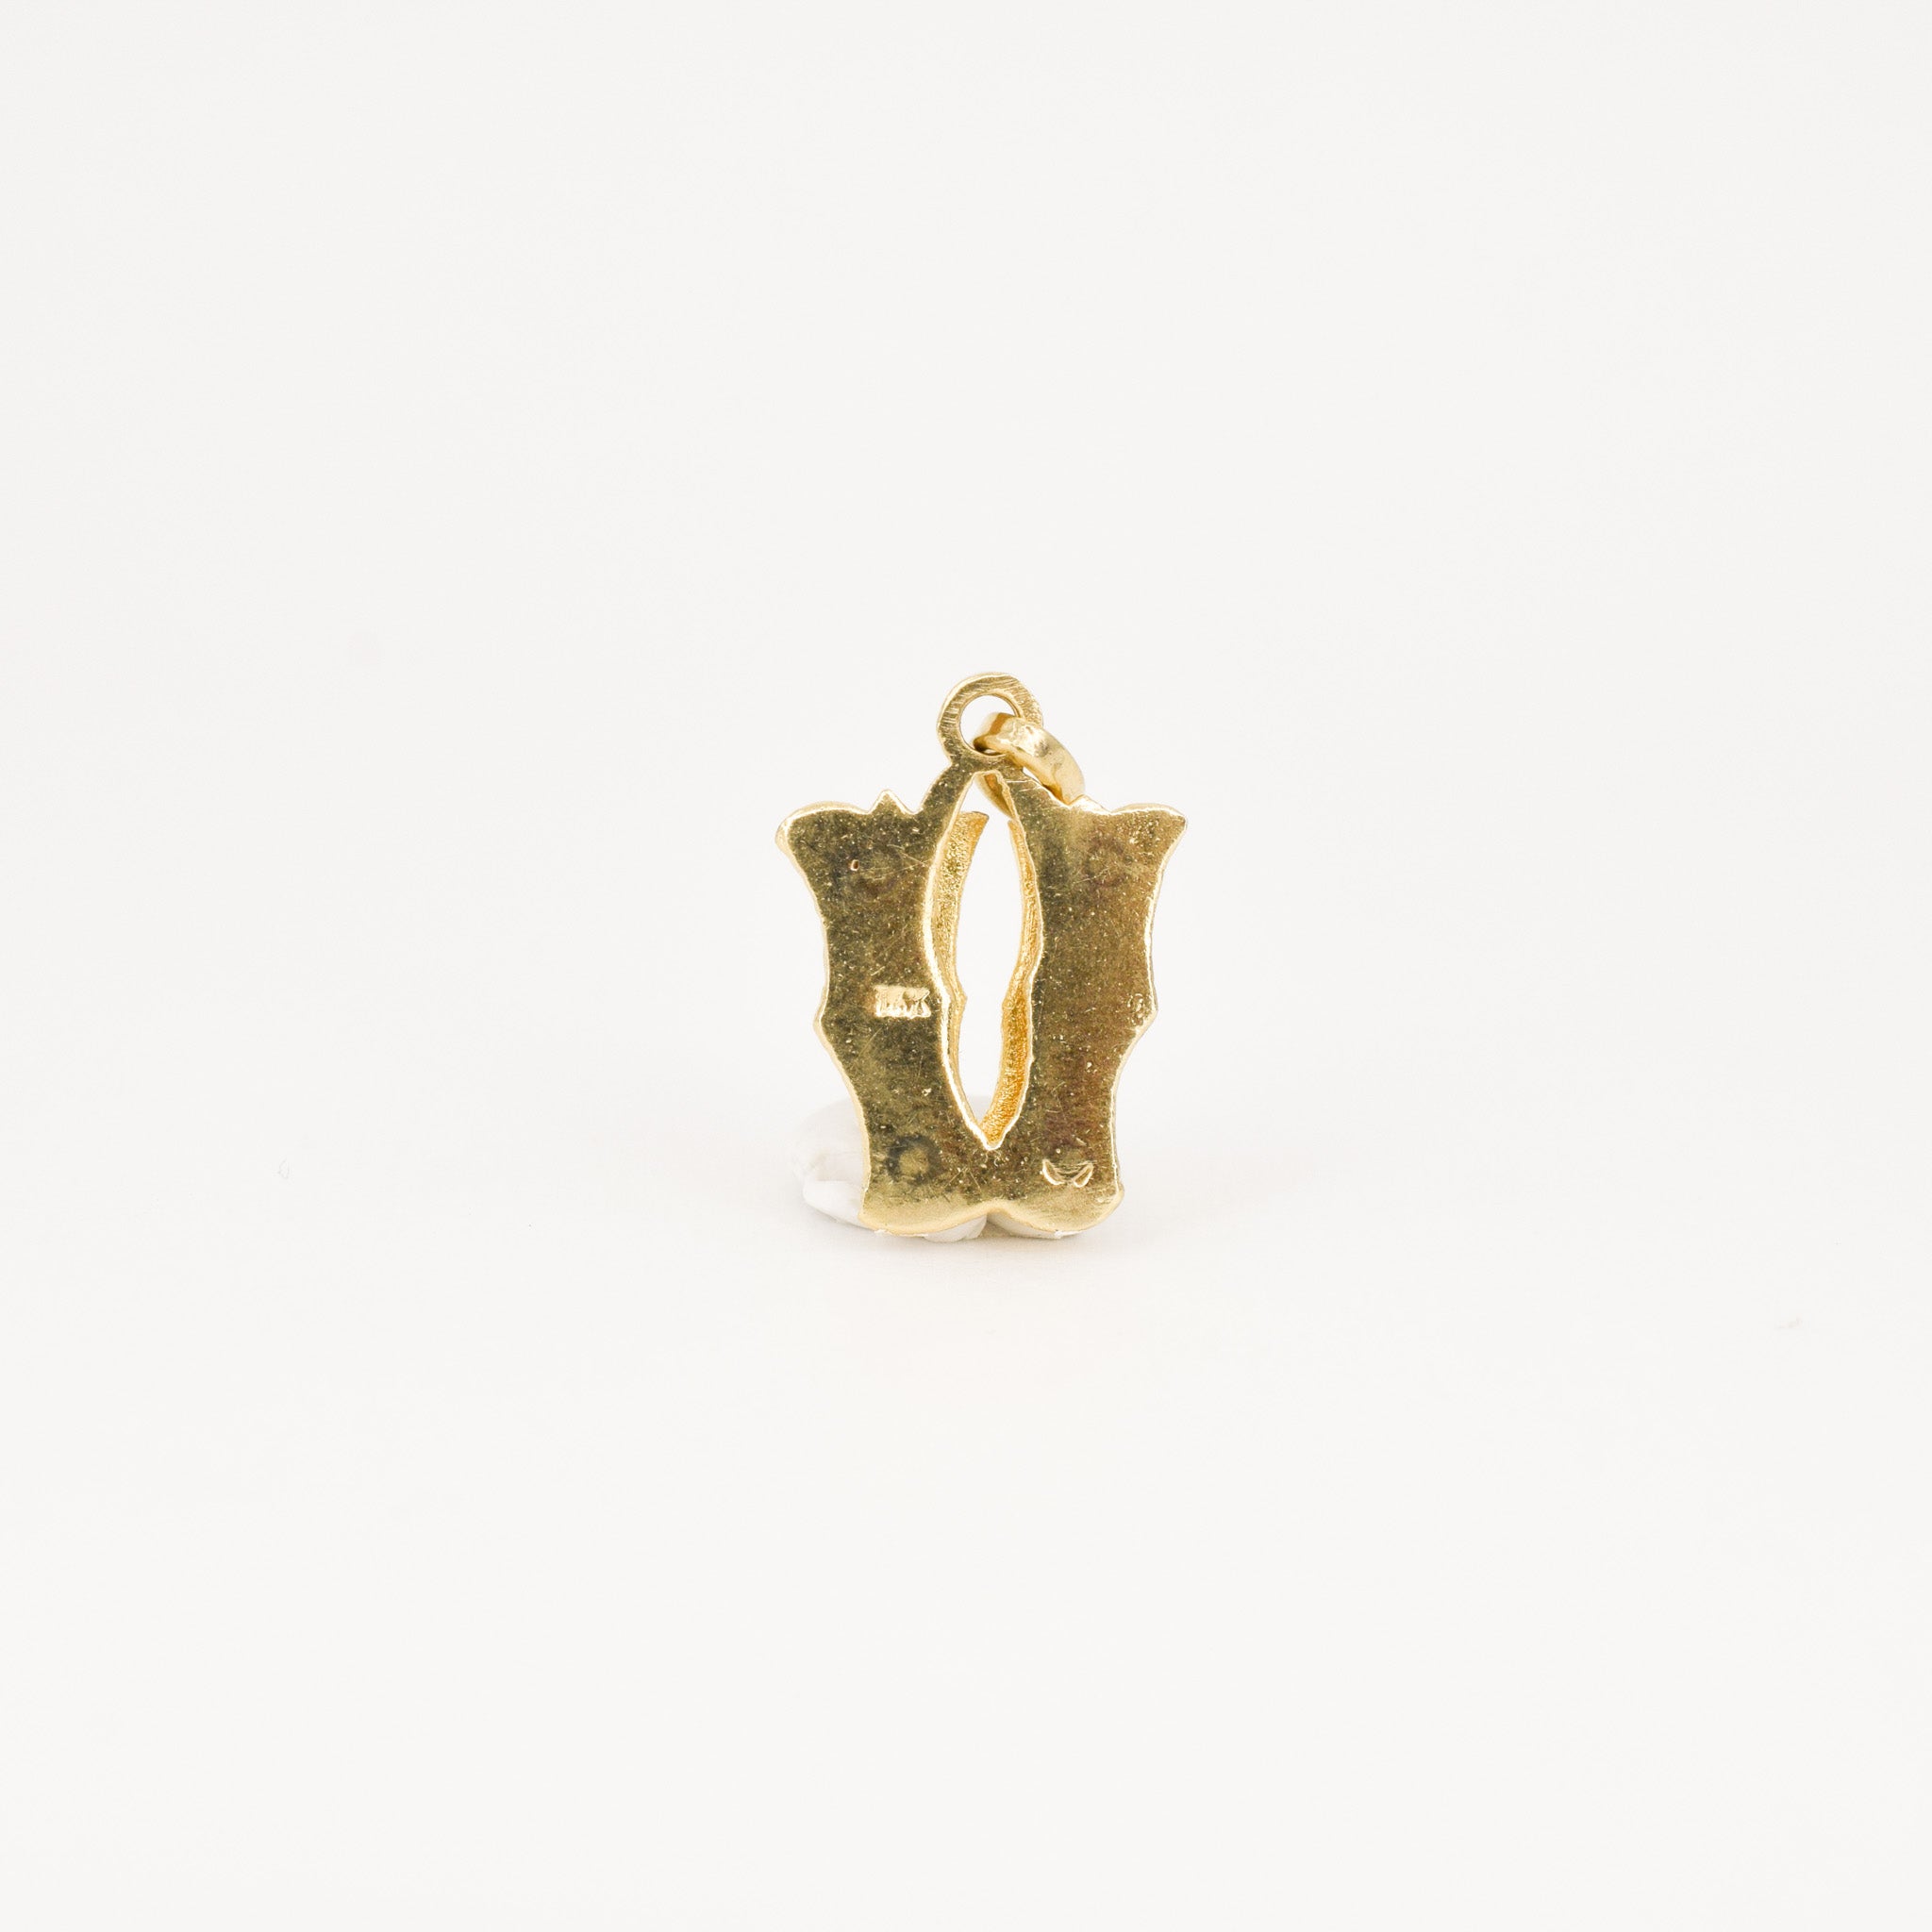 vintage 'v' gold charm pendant, folklor vintage jewelry canada